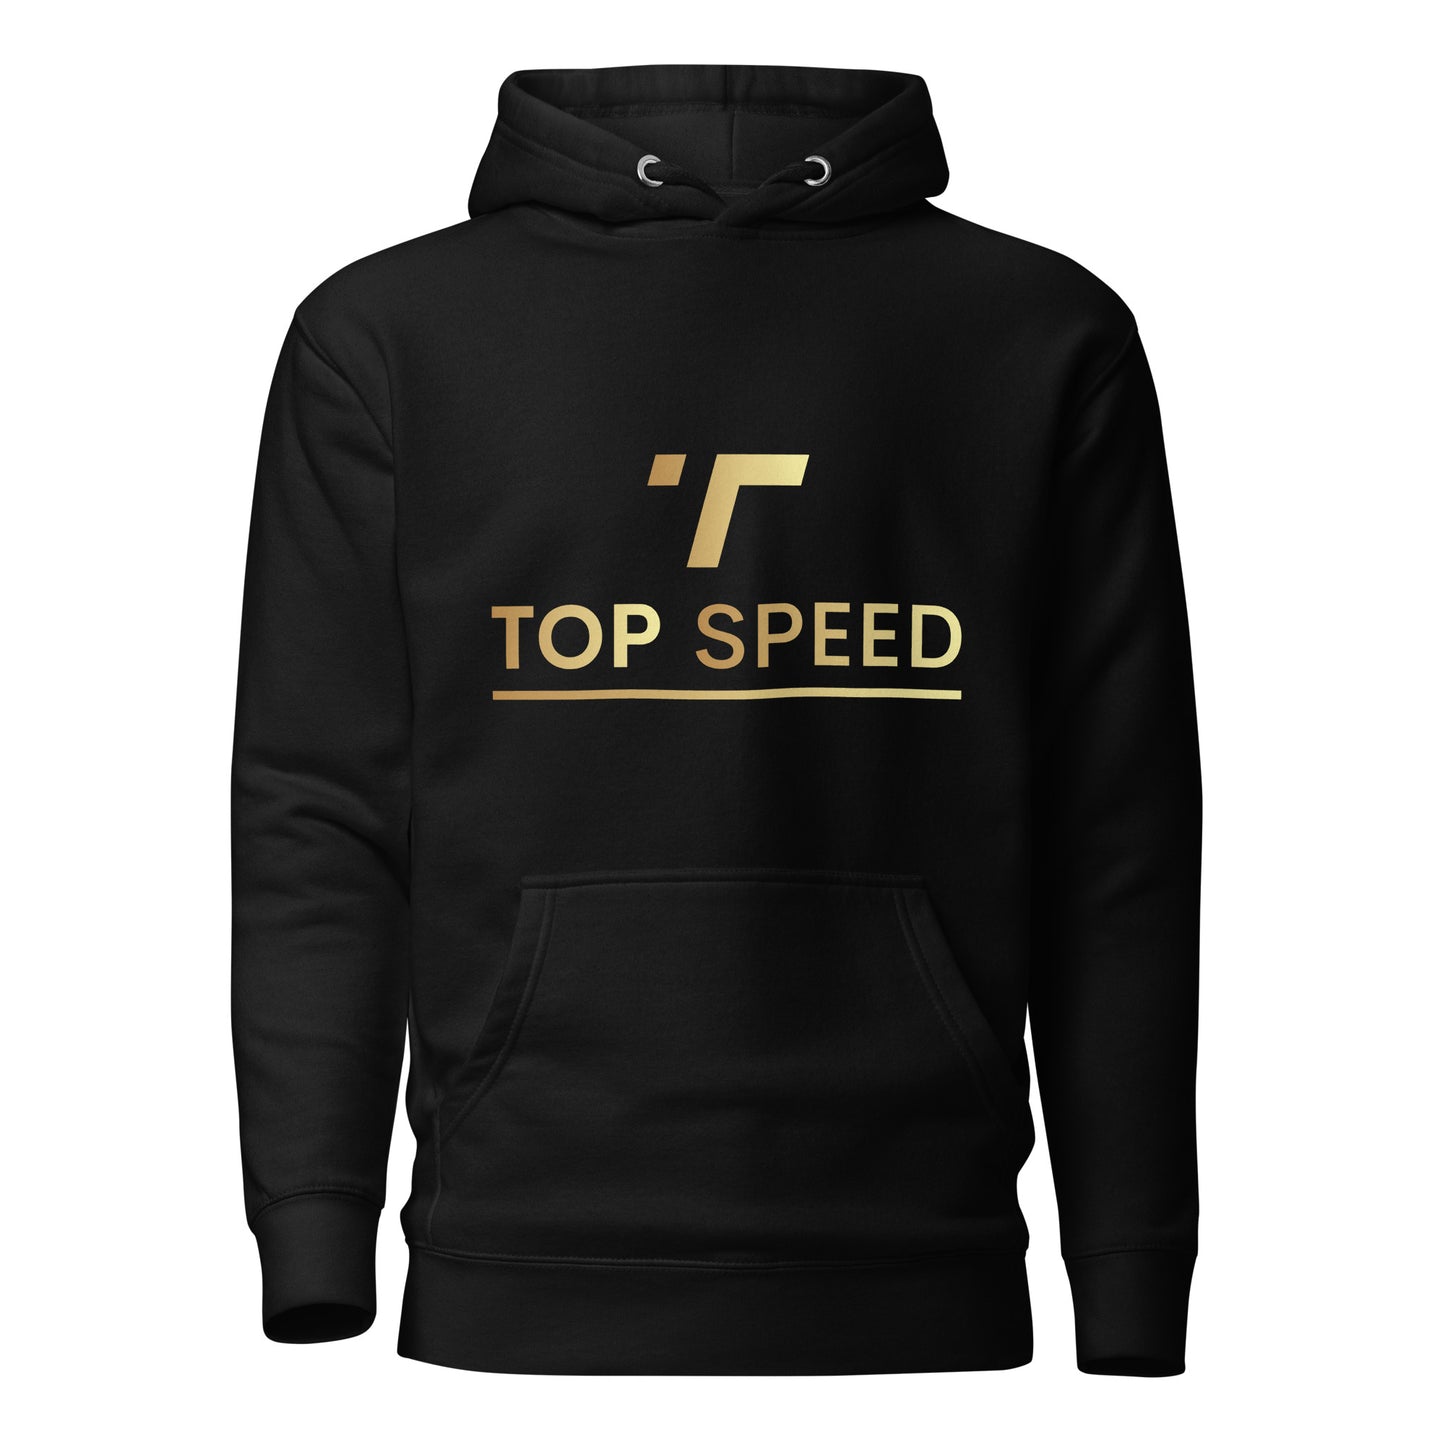 Top Speed Unisex Hoodie